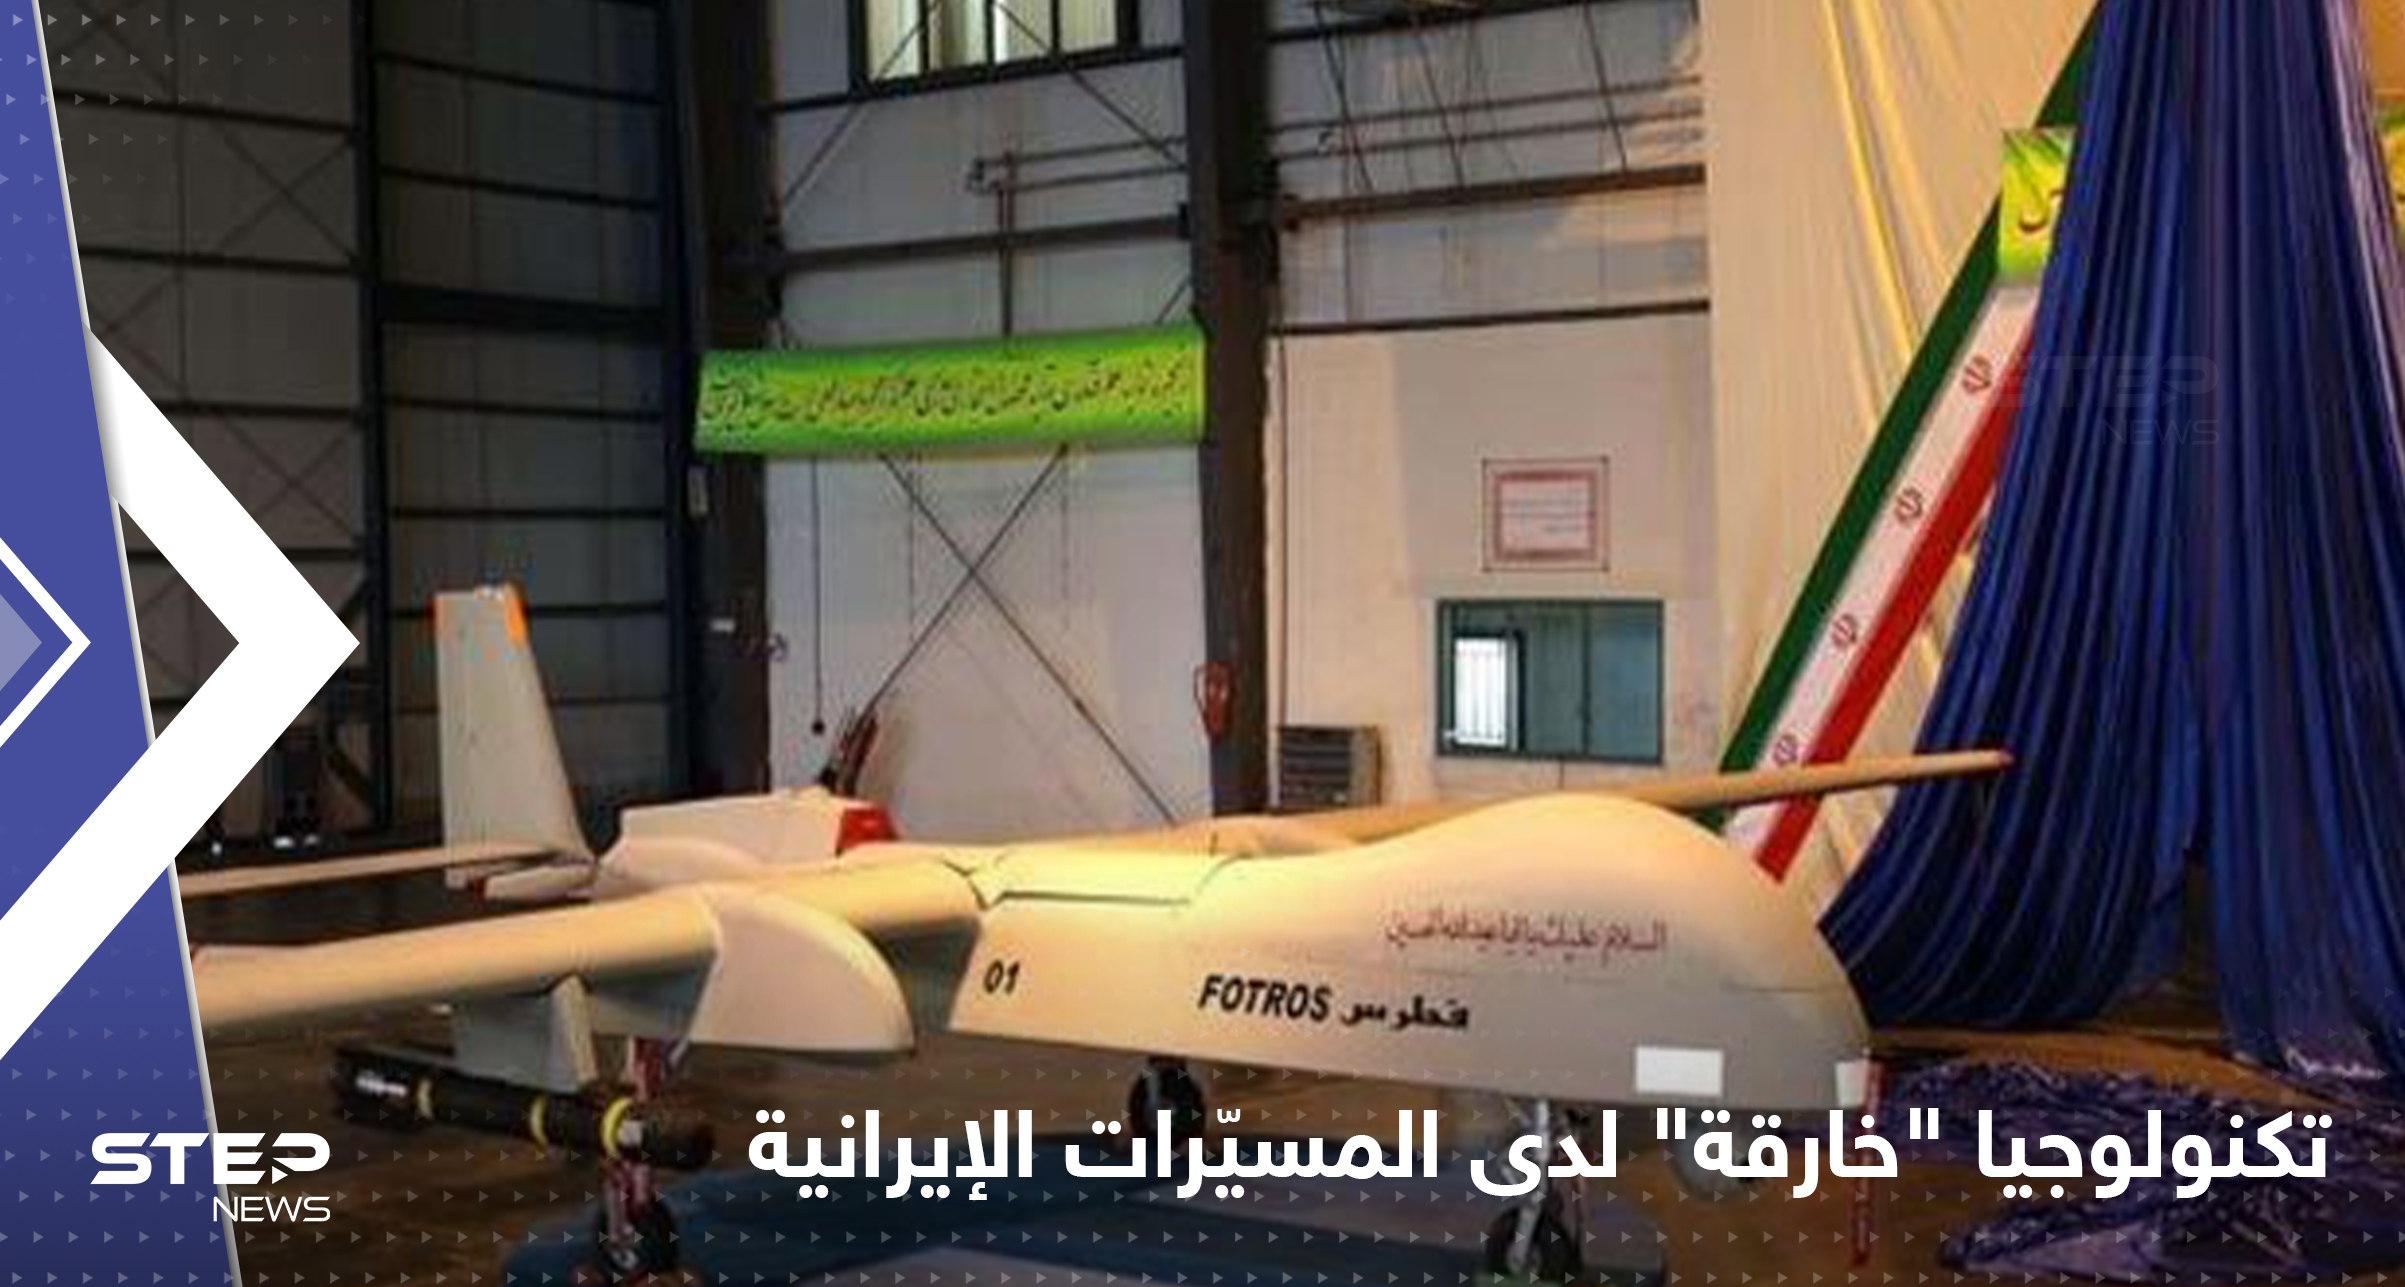  إيران تكشف عن تكنولوجيا "خارقة" لطائراتها المسيّرة